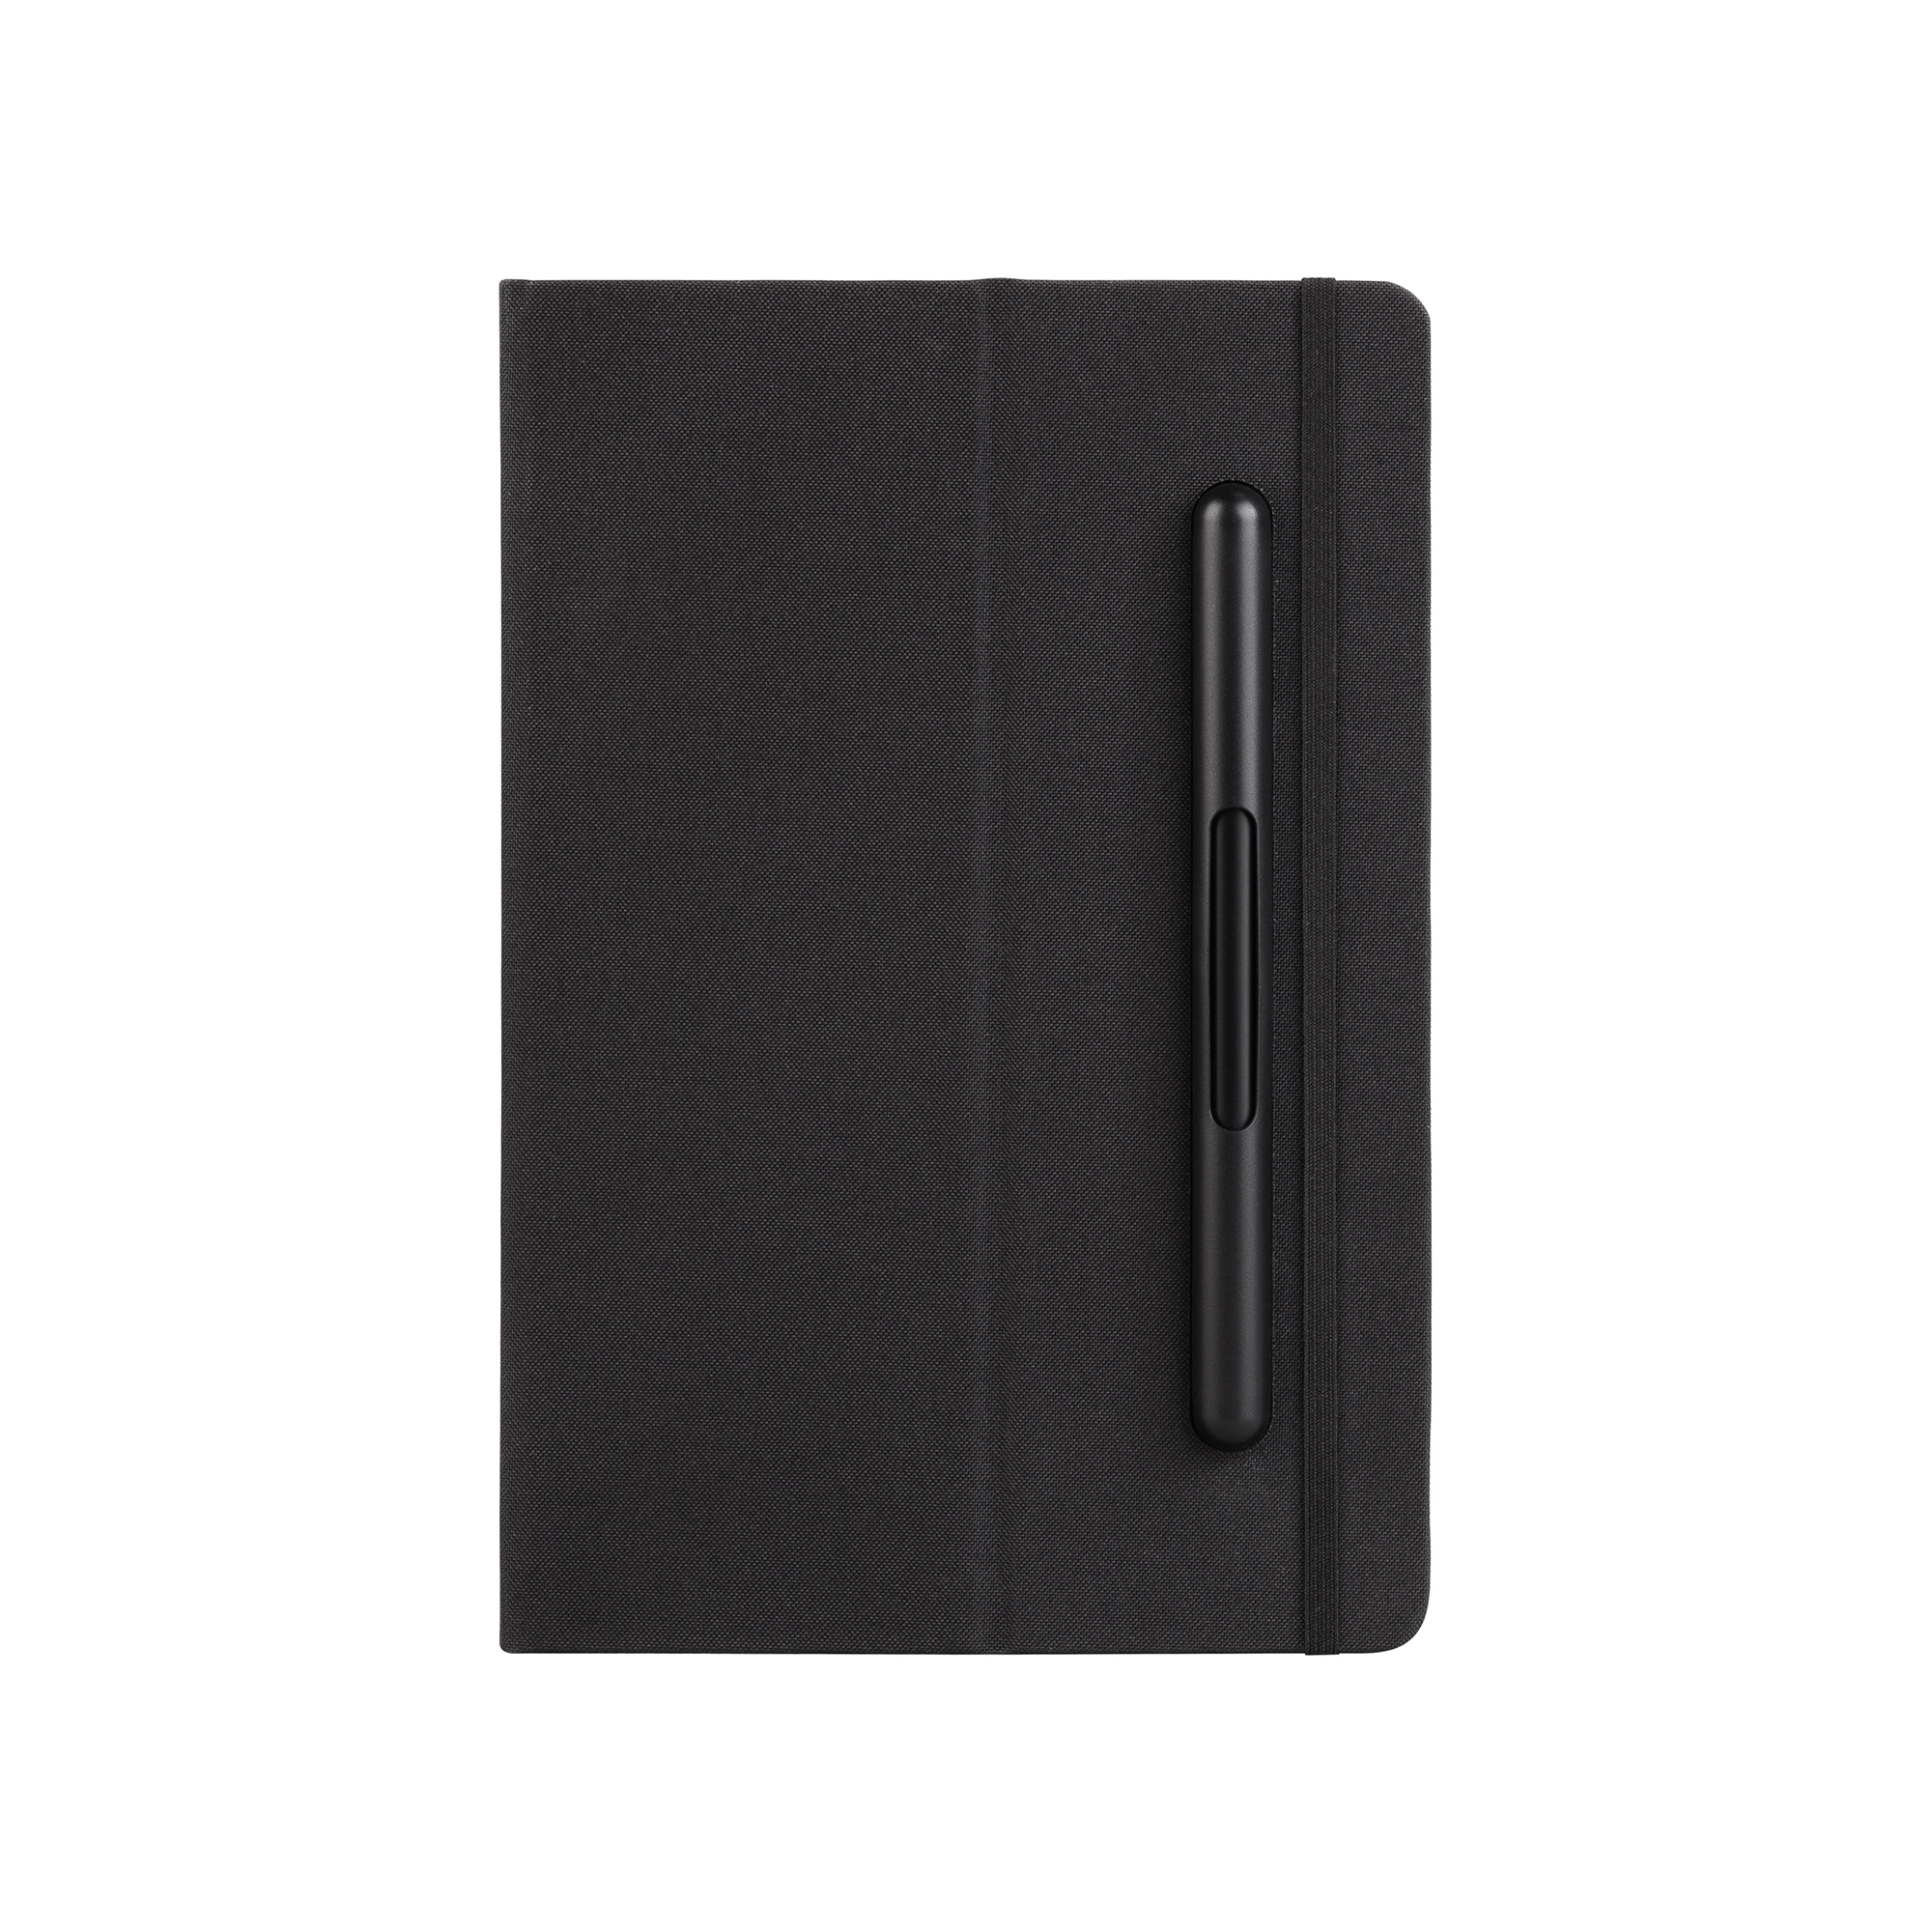 Блокнот с ручкой и вечным карандашом в пенале, с подставкой под смартфон, черный